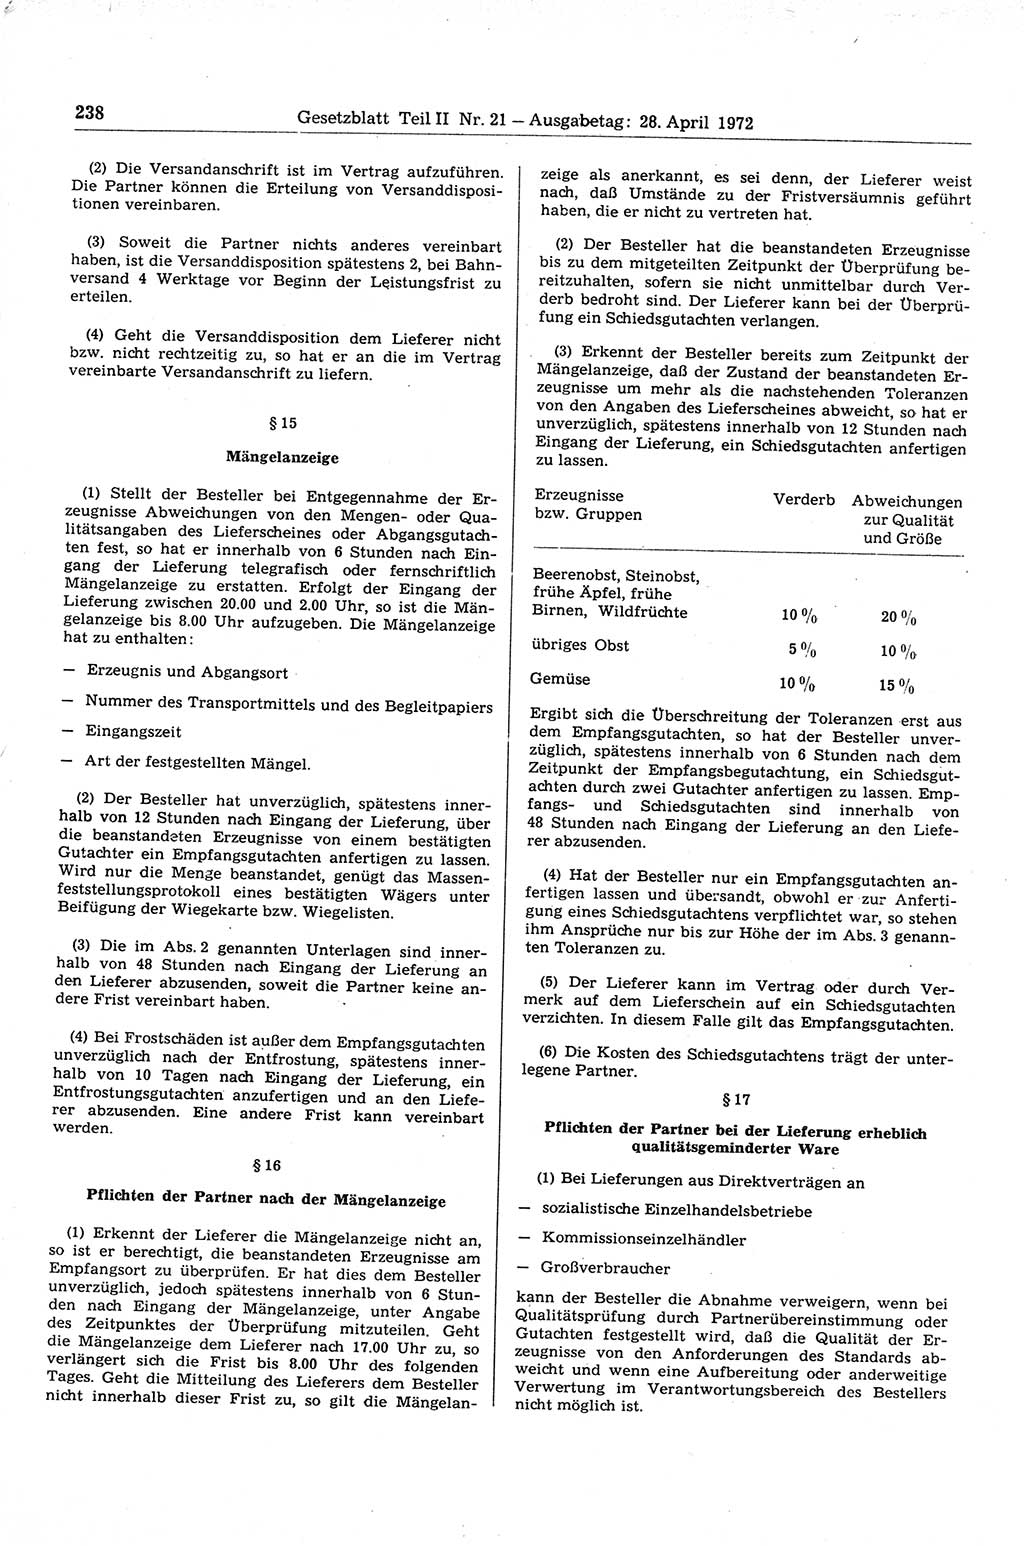 Gesetzblatt (GBl.) der Deutschen Demokratischen Republik (DDR) Teil ⅠⅠ 1972, Seite 238 (GBl. DDR ⅠⅠ 1972, S. 238)